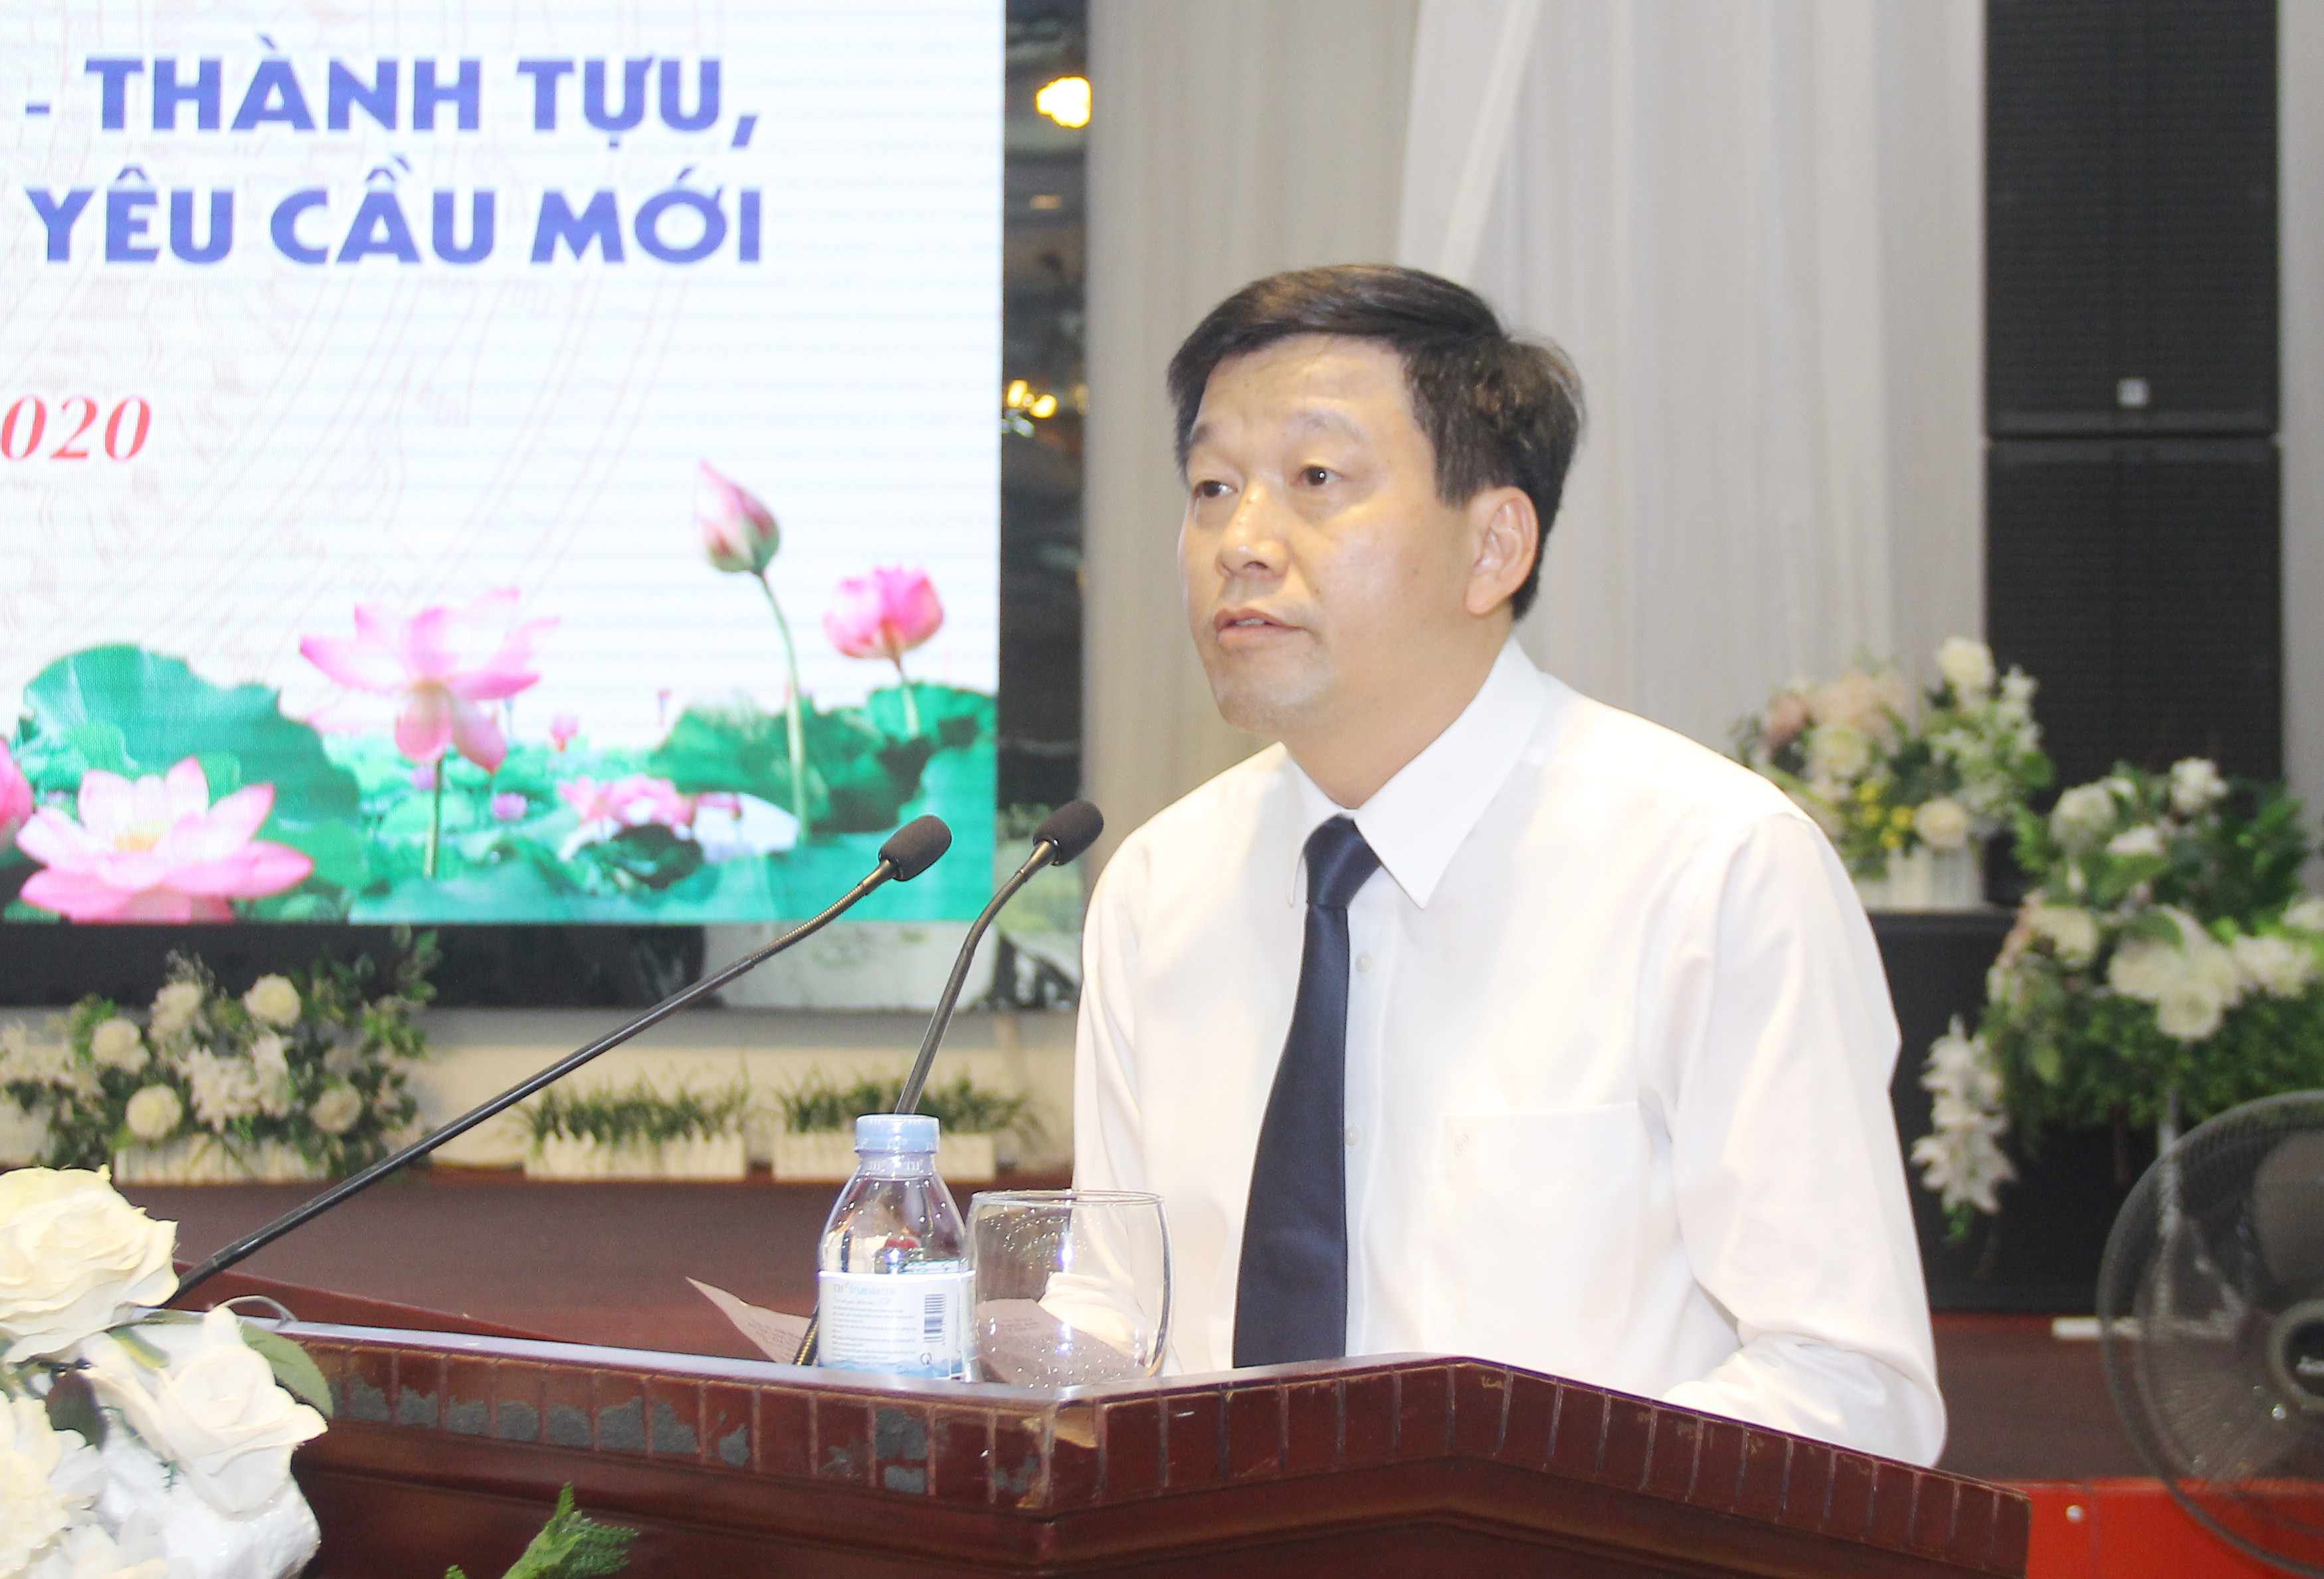 Đồng chí Kha Văn Tám  Ủy viên Ban Chấp hành Đảng bộ tỉnh, Phó trưởng ban Thường trực ban Tuyên giáo Tỉnh ủy phát biểu tại cuộc tọa đàm. Ảnh: Mai Hoa